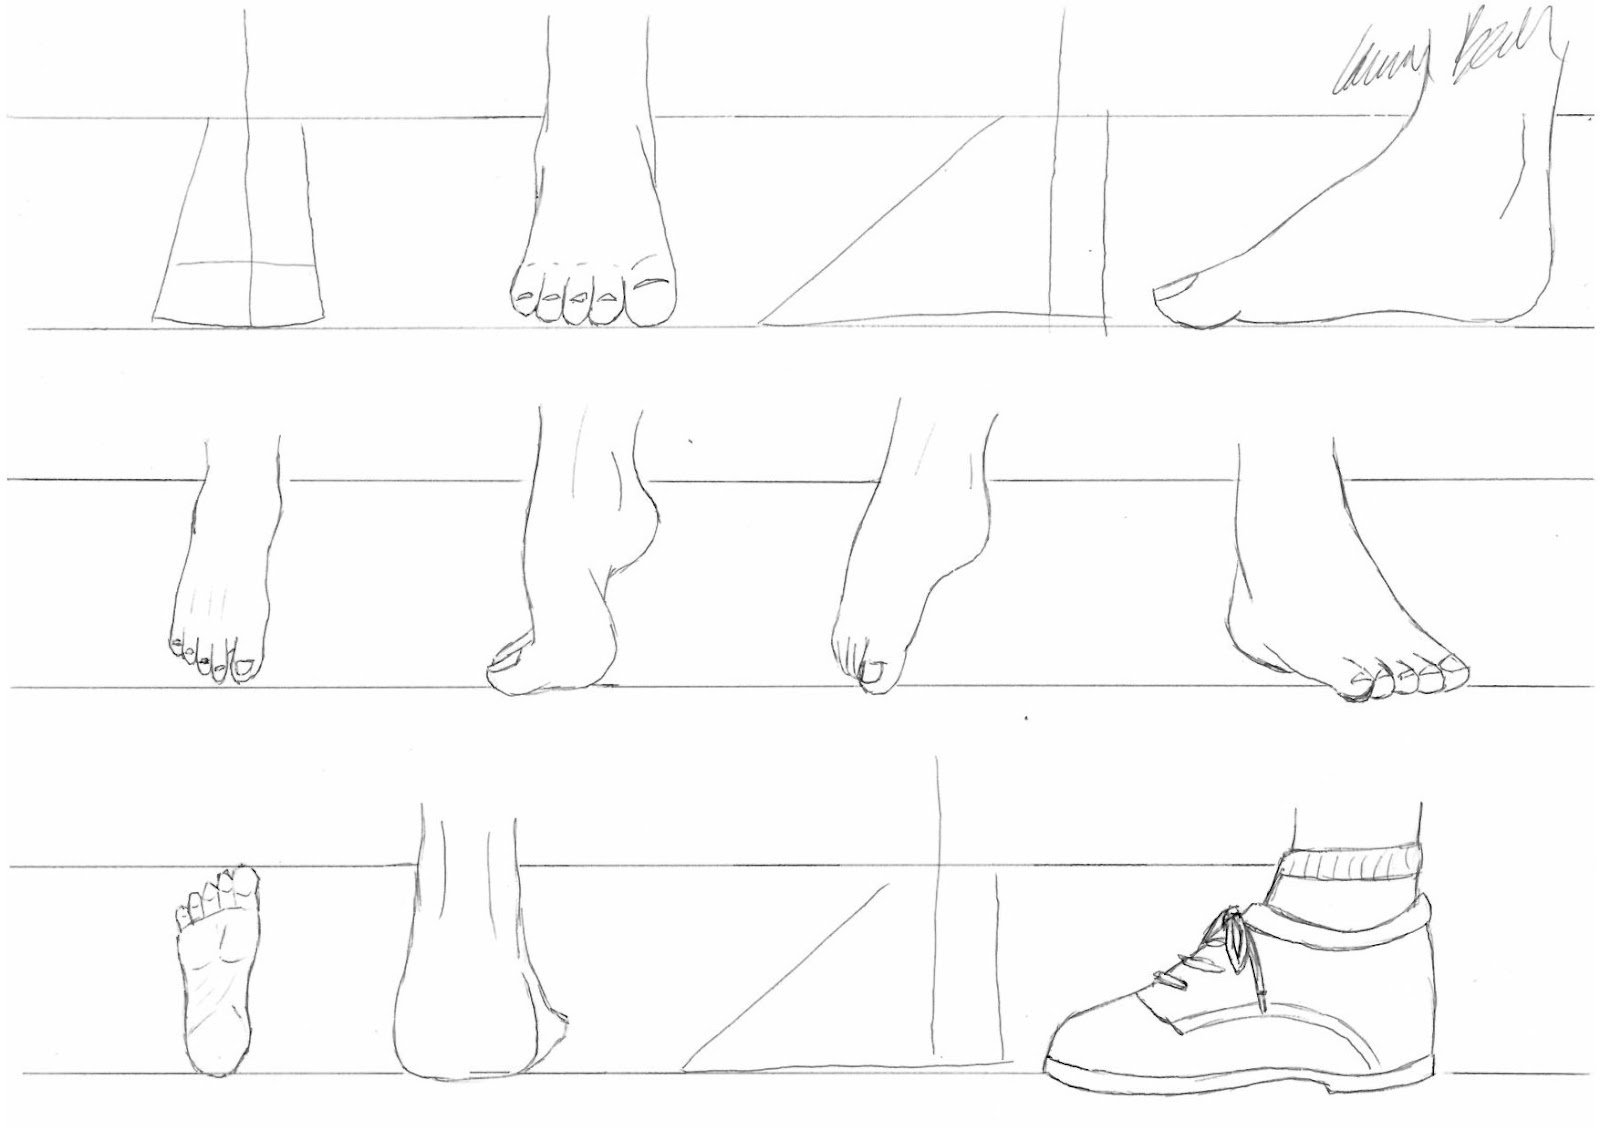 MangaMen101: How to draw manga feet.